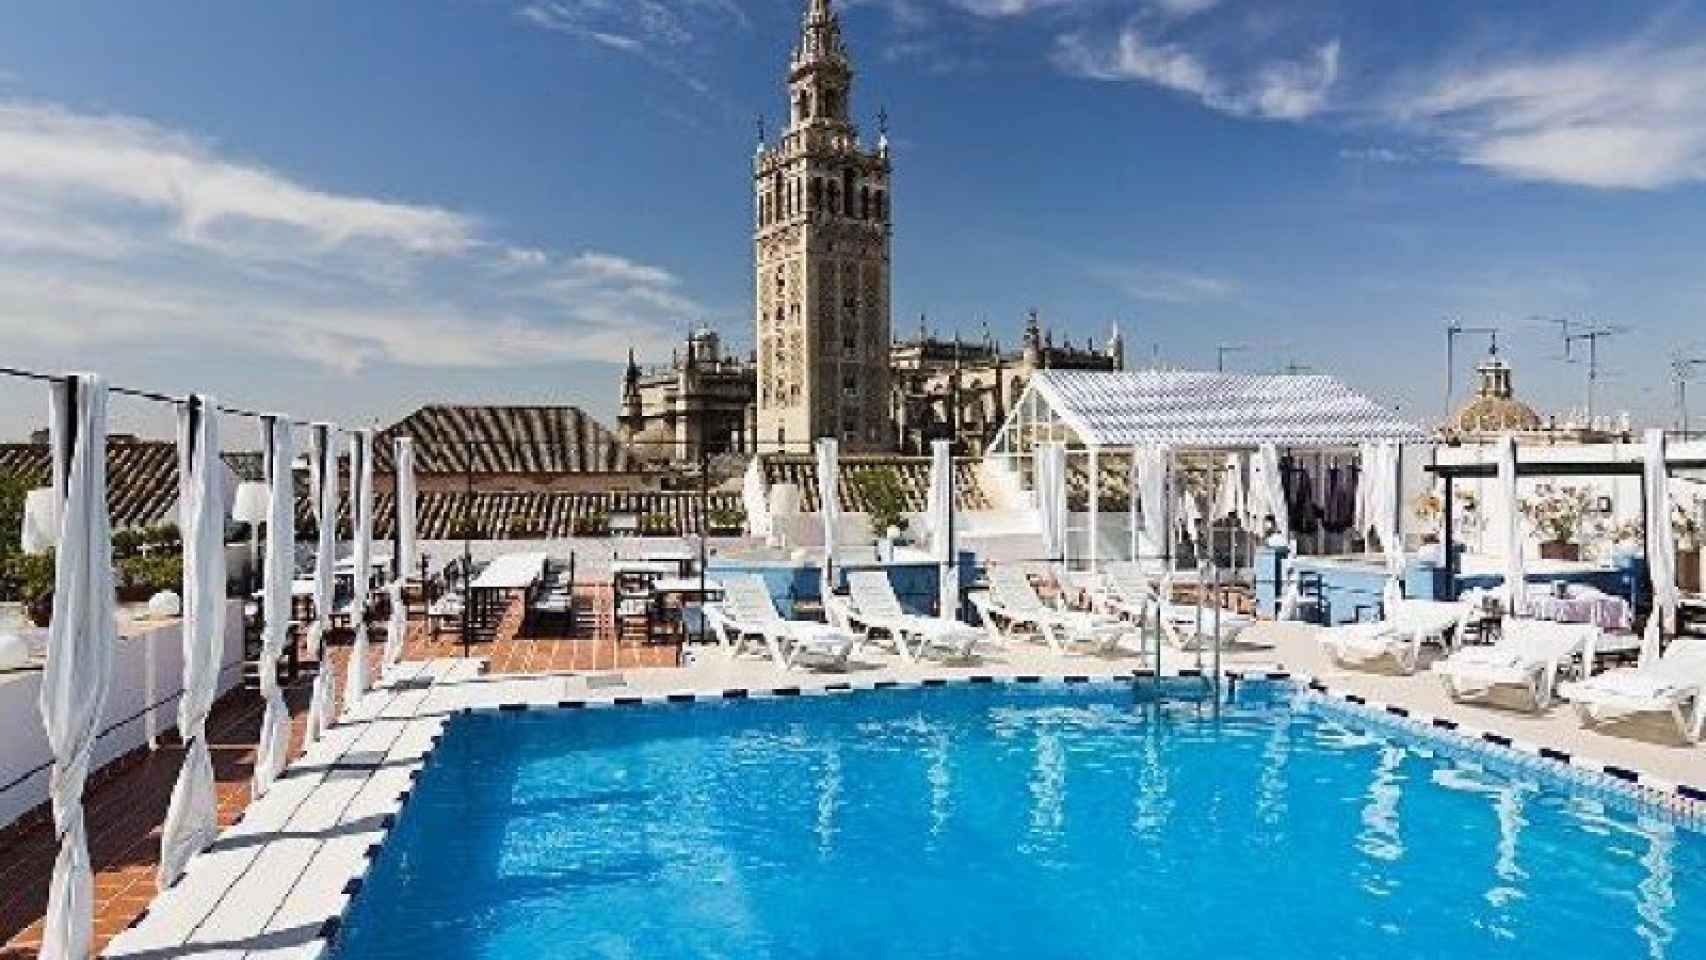 Piscina en la terraza del Hotel Seises Sevilla de Marriott International.